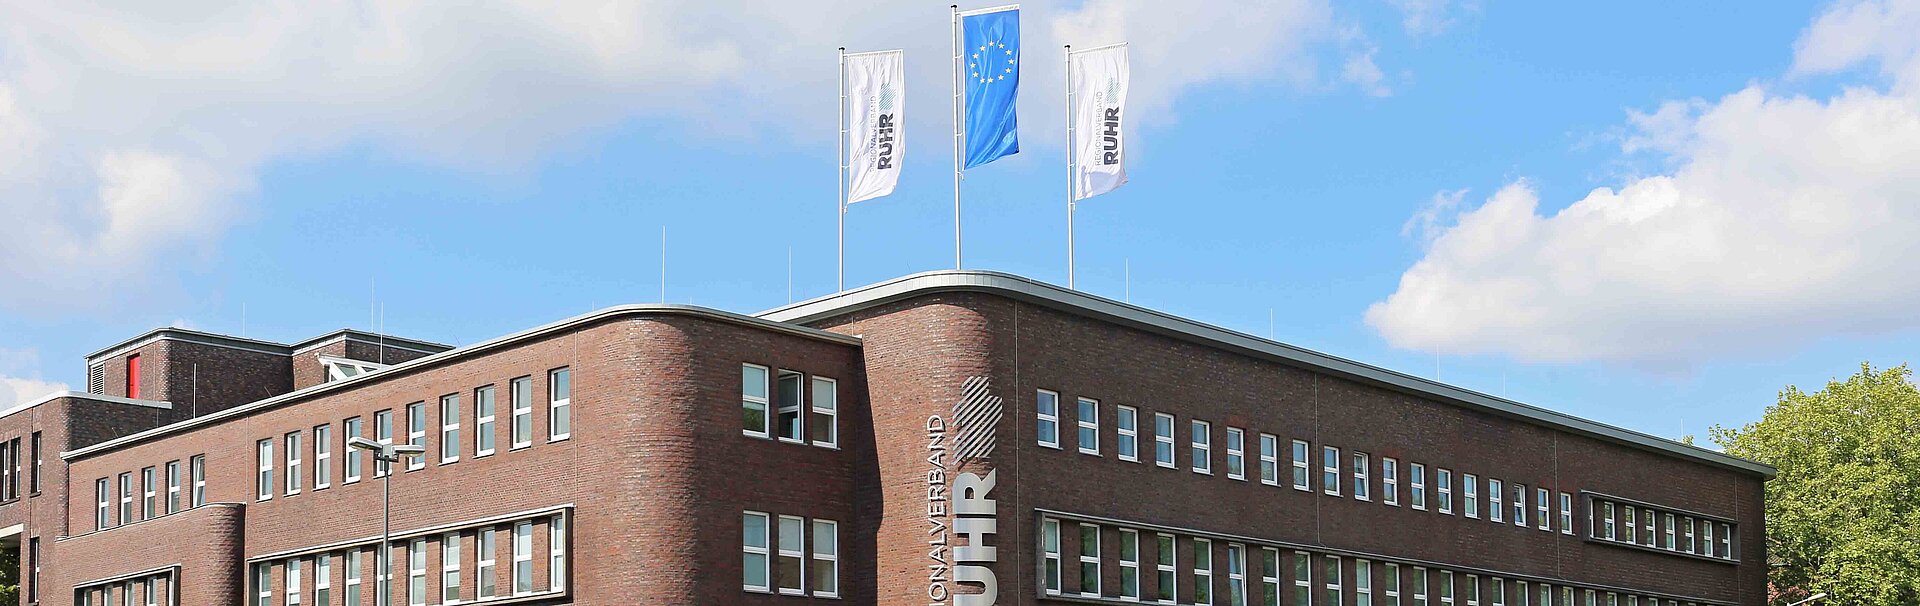 Flaggen auf dem RVR-Hauptgebäude, Foto: Michael Schwarze-Rodrian